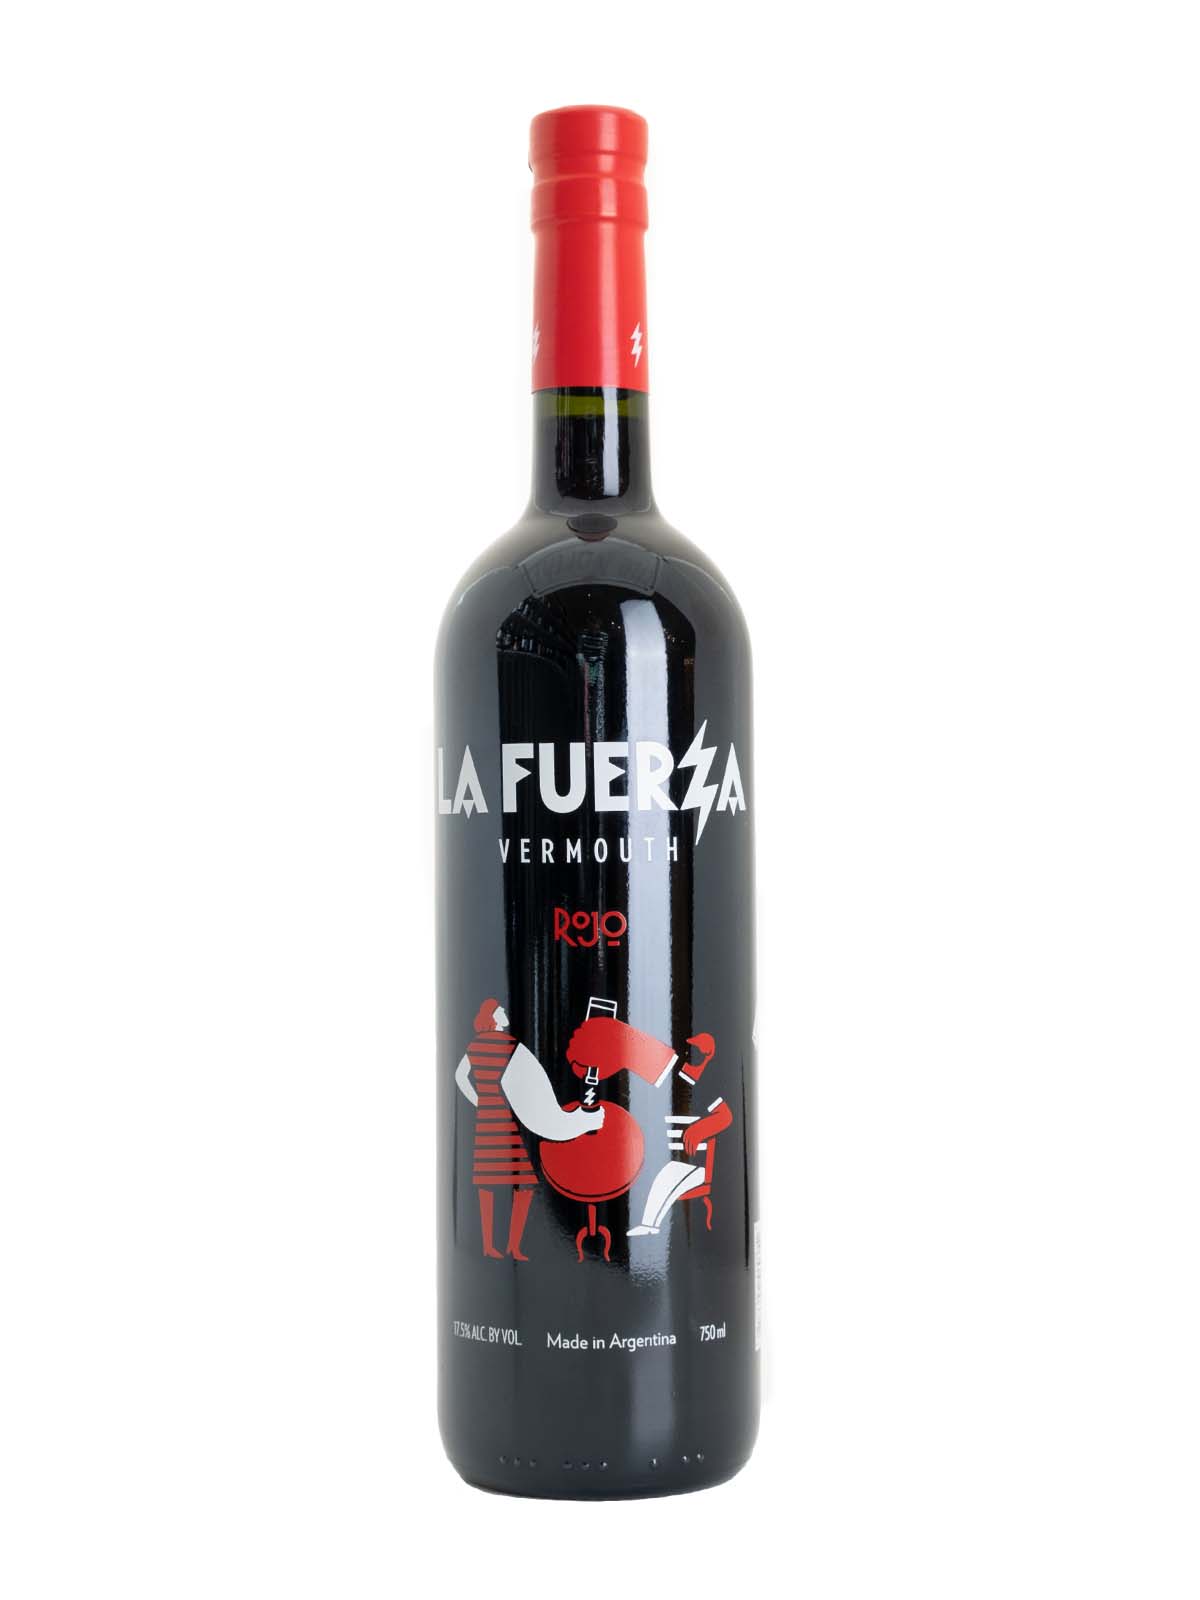 La Fuerza Vermouth Rojo (Mendoza, AR)